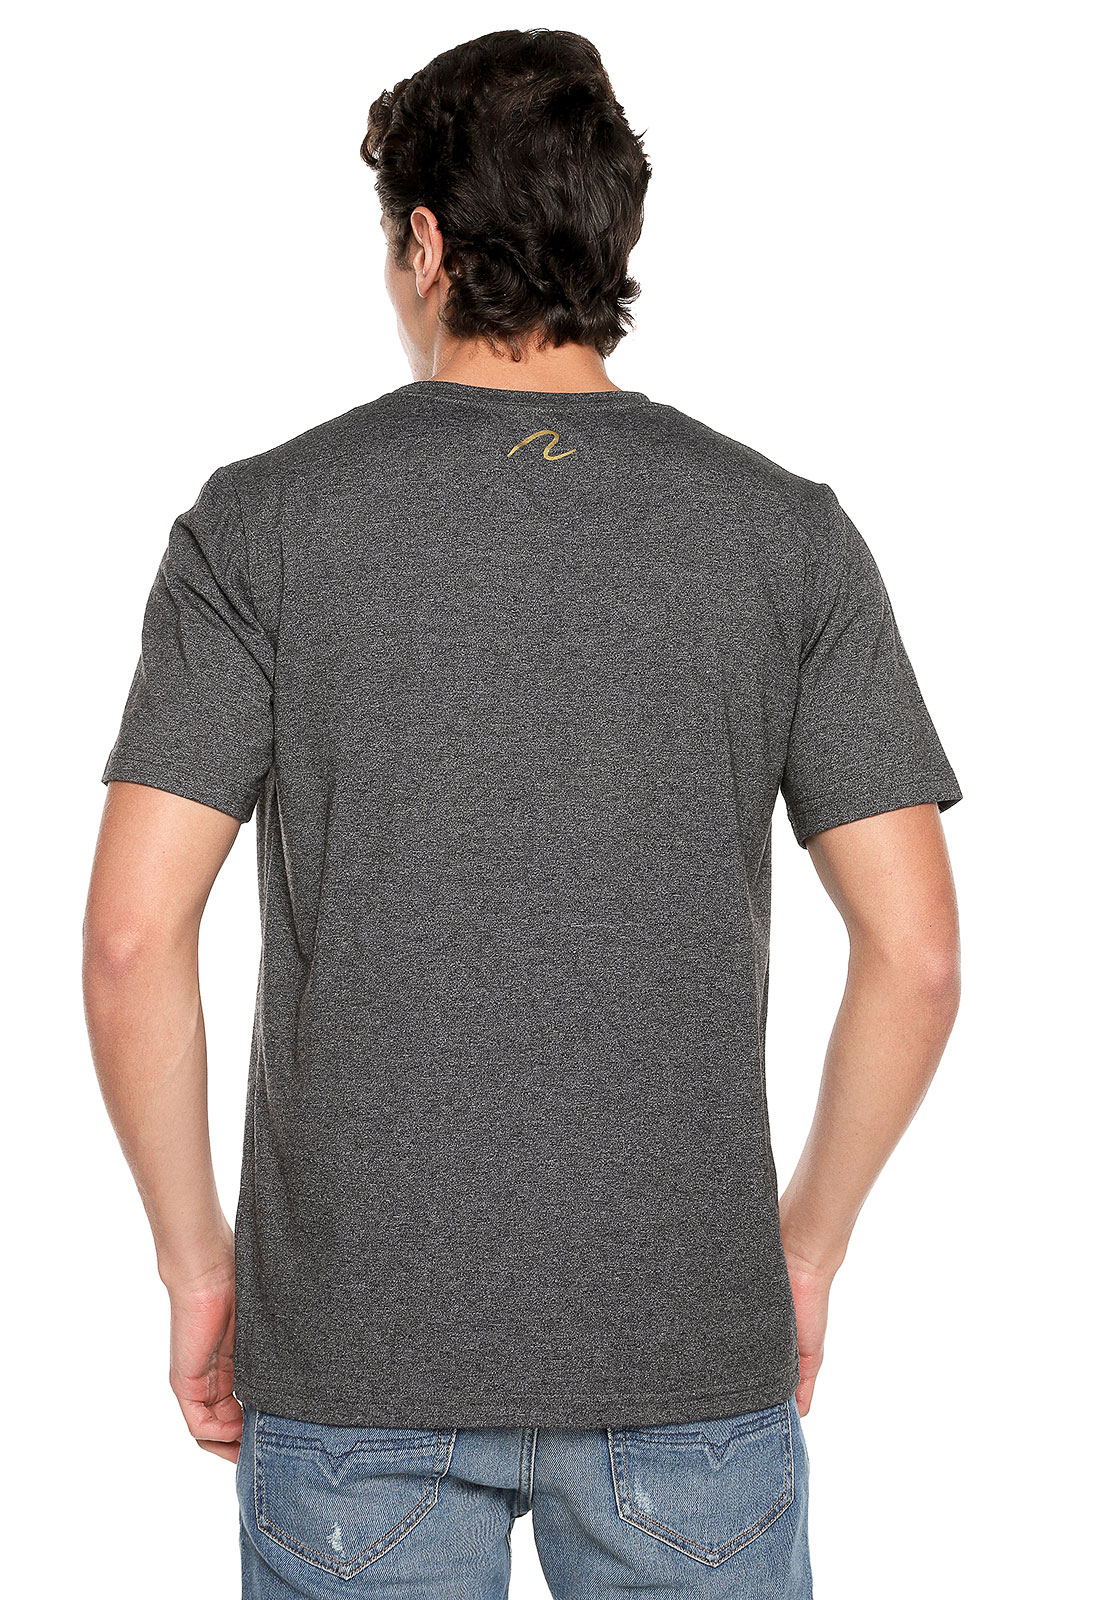 T-shirt para hombre gris Team - Rachid Style